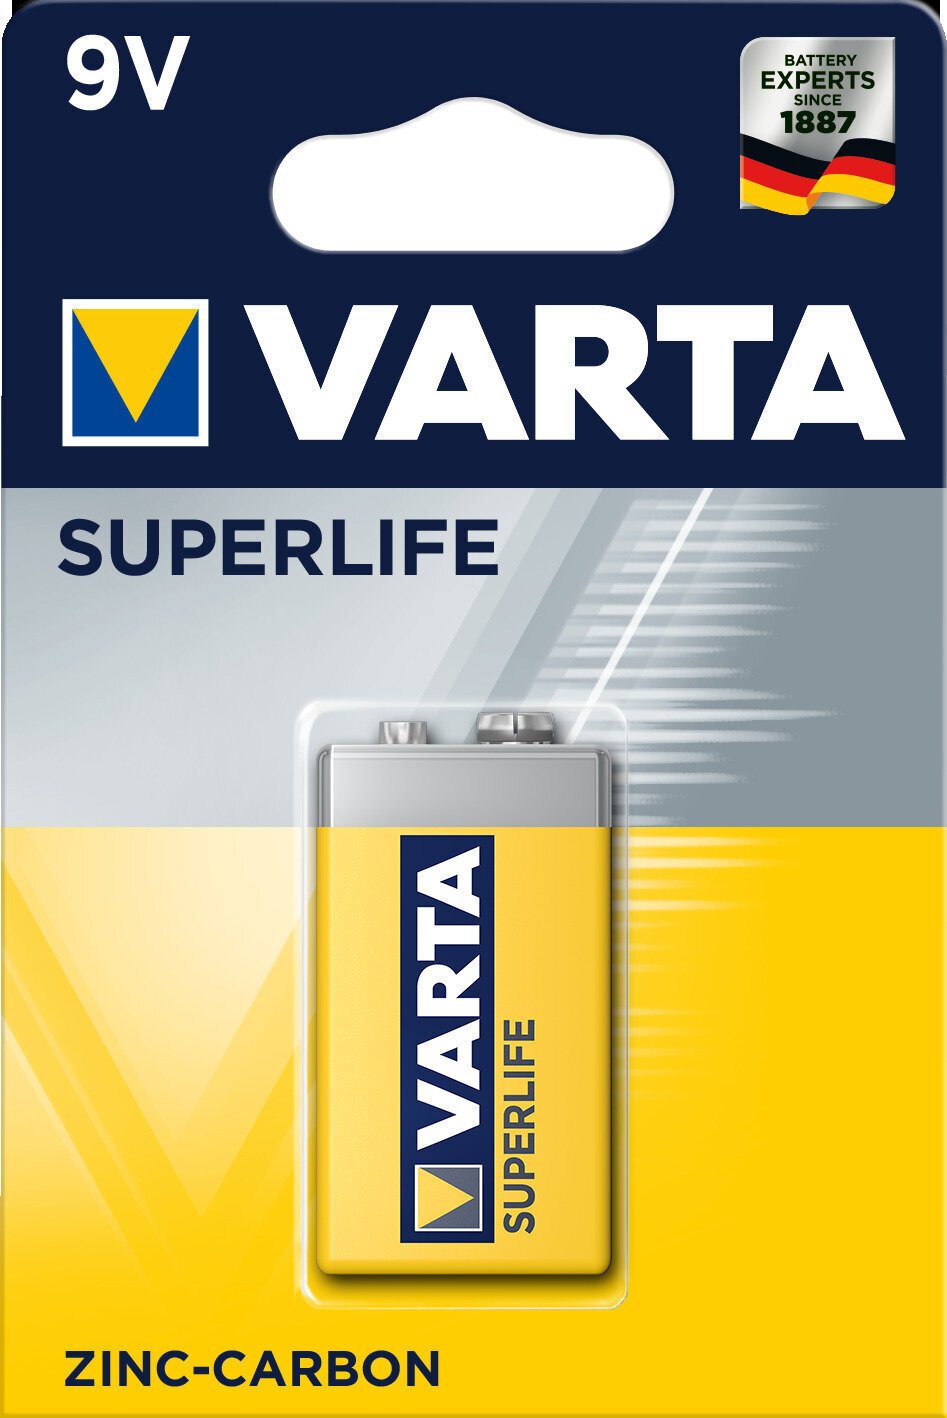 9V Batterie Varta 9V Batterie 6F22 Superlife